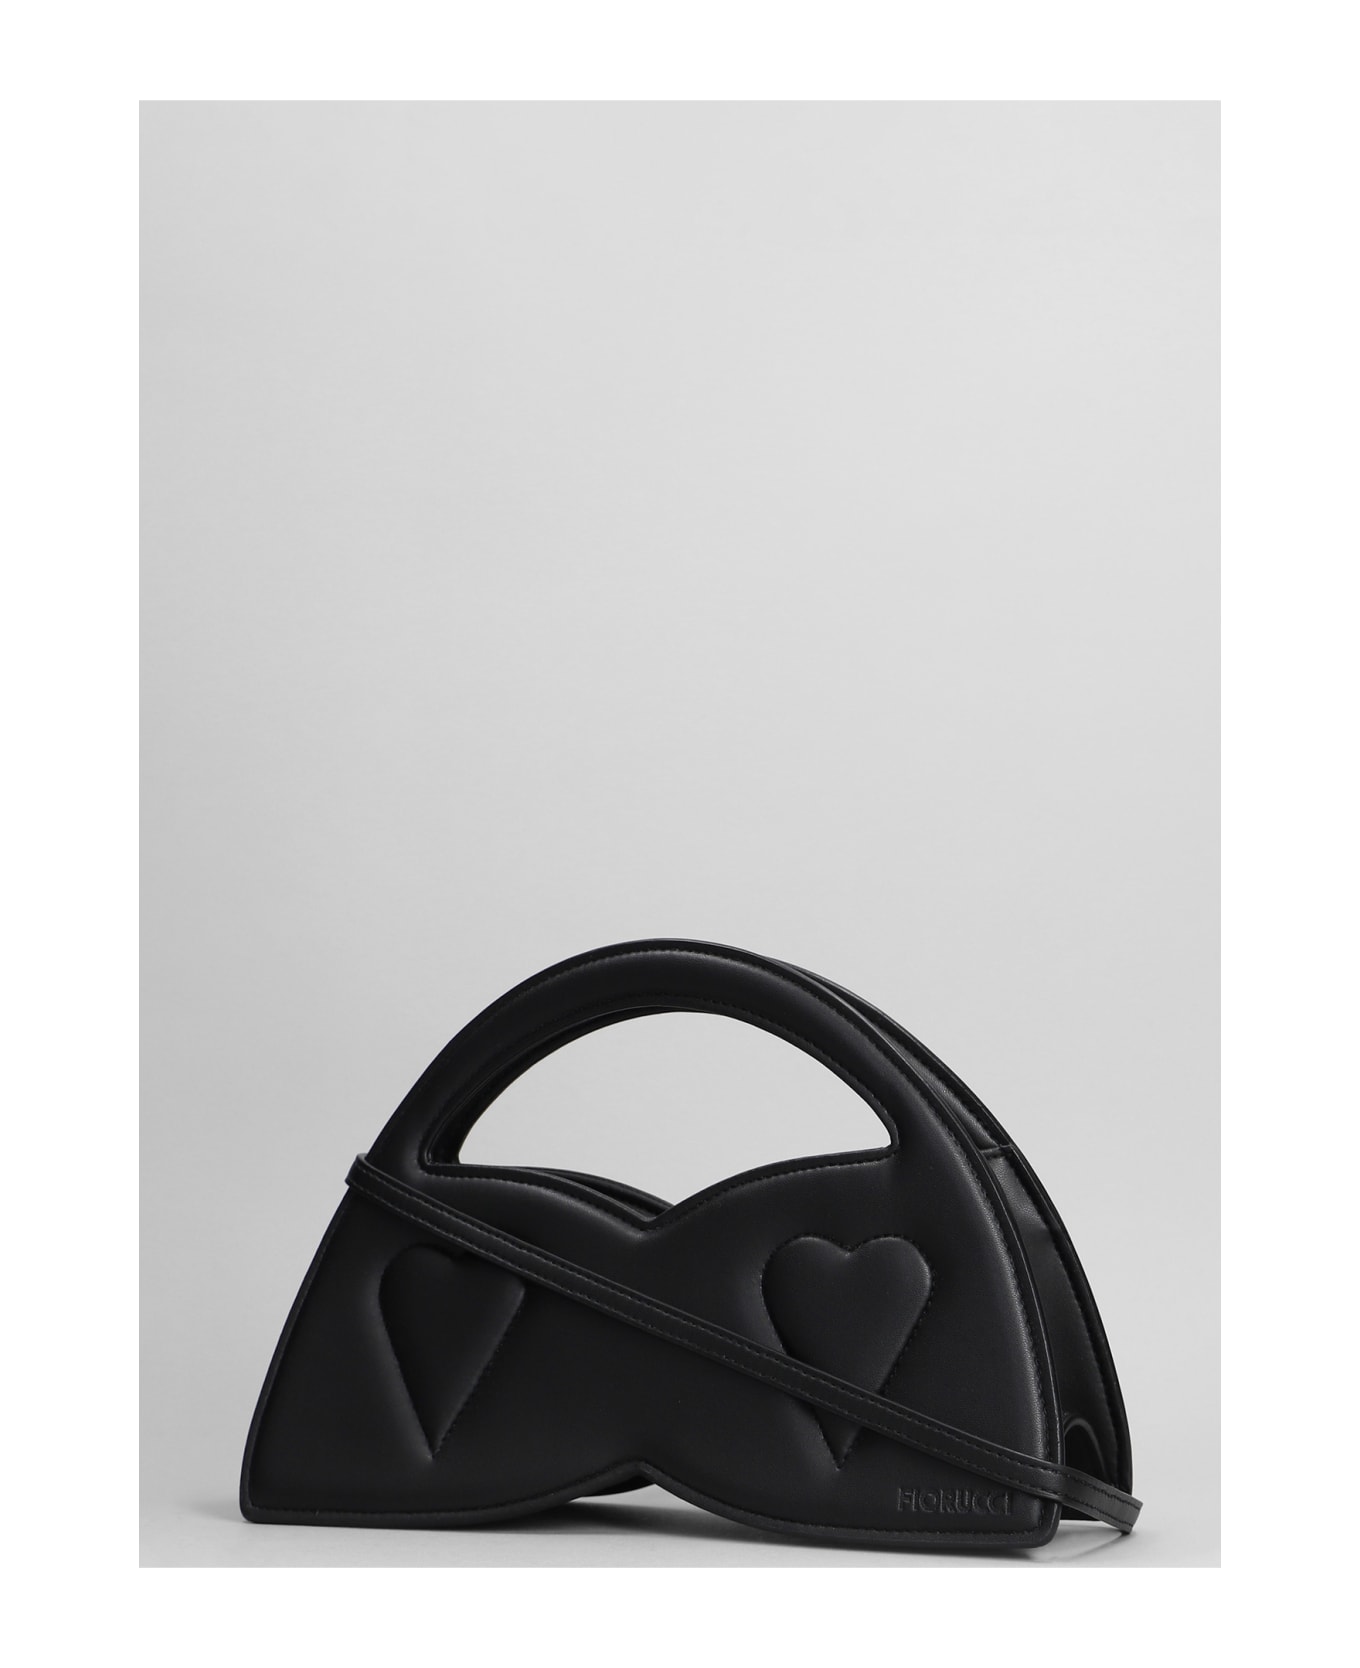 Fiorucci Lina Bag Hand Bag In Black Polyuretan - black